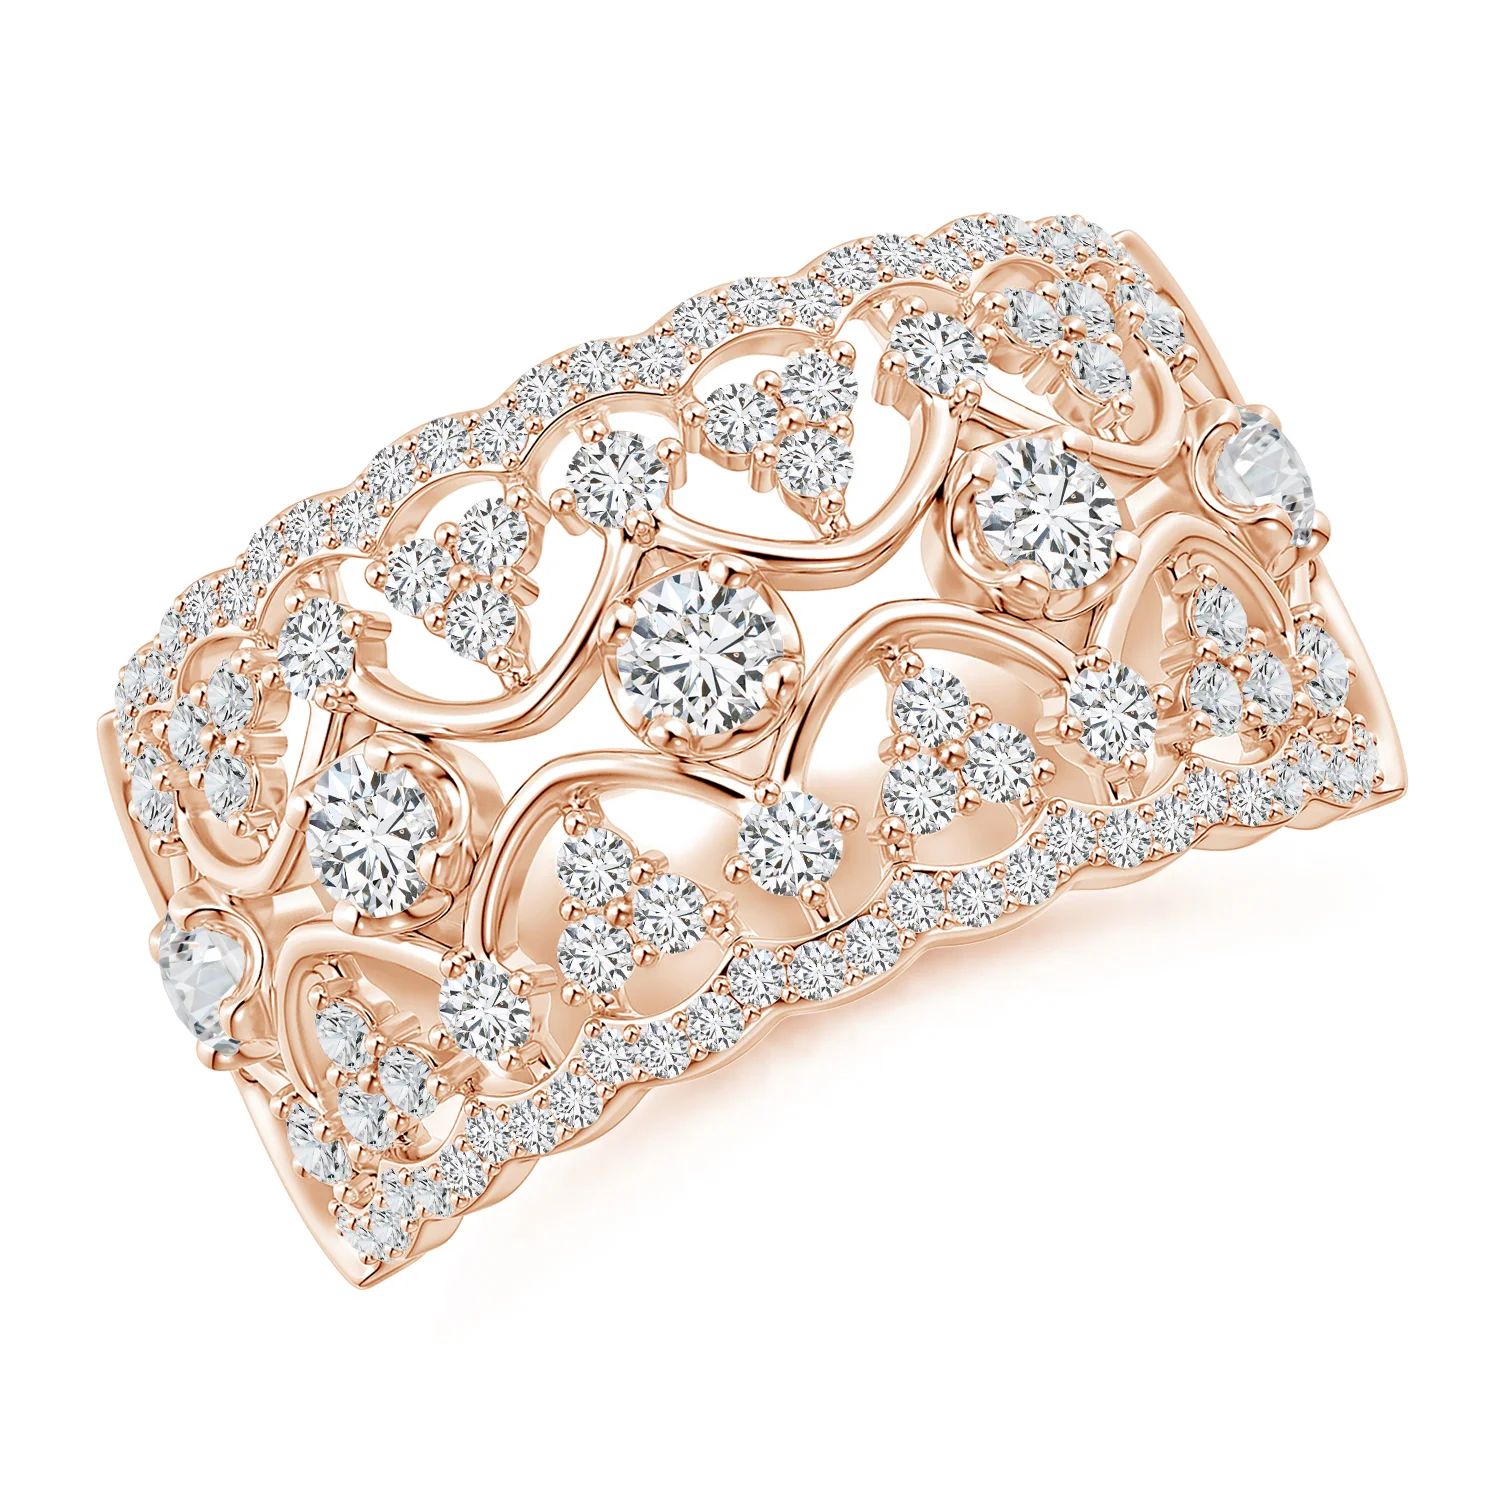 Art Deco Inspired Diamond Broad Filigree Anniversary Ring | Angara | Angara US